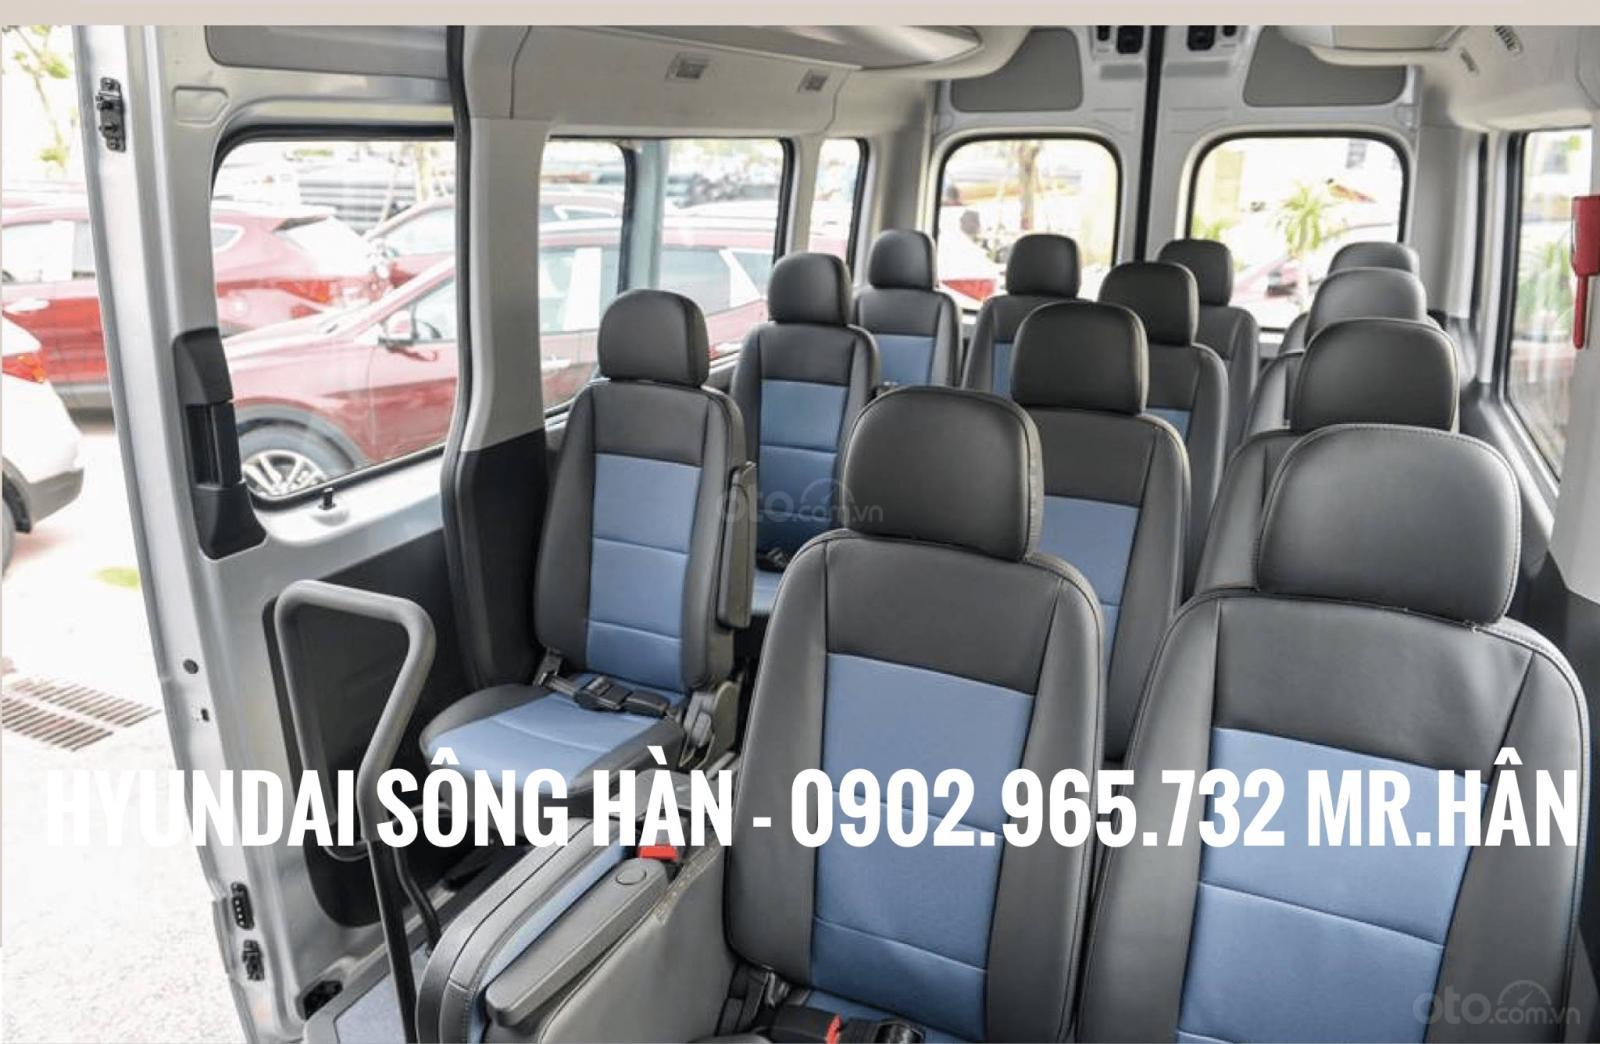 Bán Hyundai Solati 2019 tại Đà Nẵng, liên hệ: Mr. Hân 0902 965 732-8